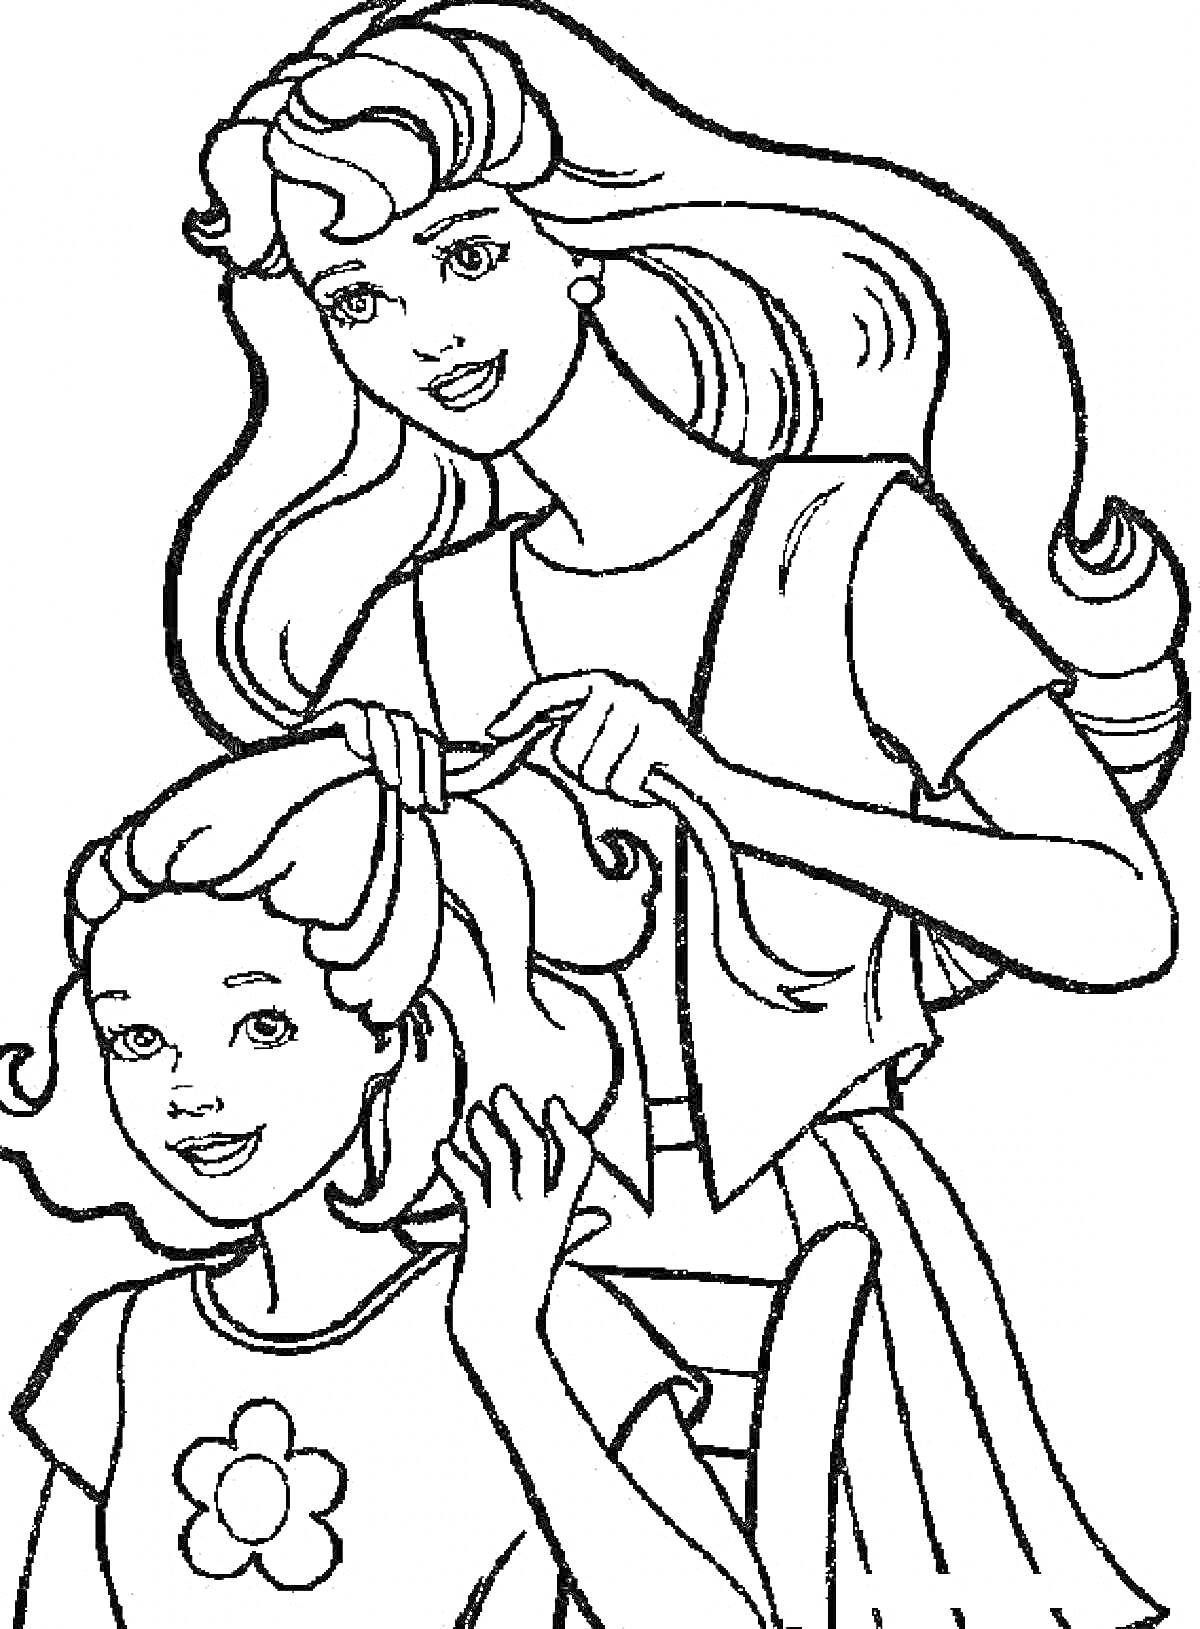 Раскраска Женщина заплетает волосы девочке, обе улыбаются, длинные волосы, цветок на платье девочки, кресло